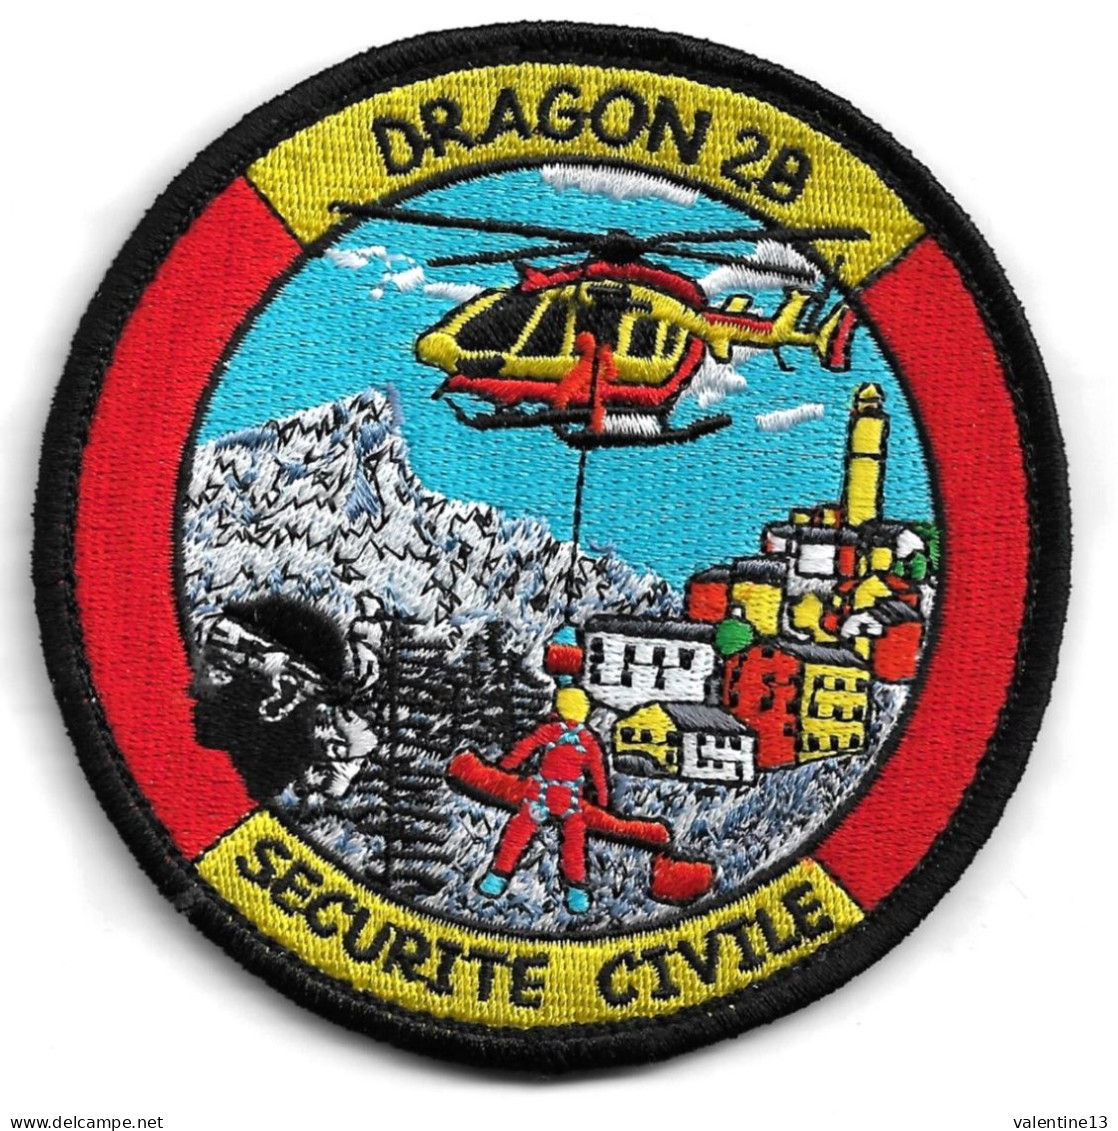 Ecusson SECURITE CIVILE DRAGON 2B EN HELITREUILLAGE - Pompieri